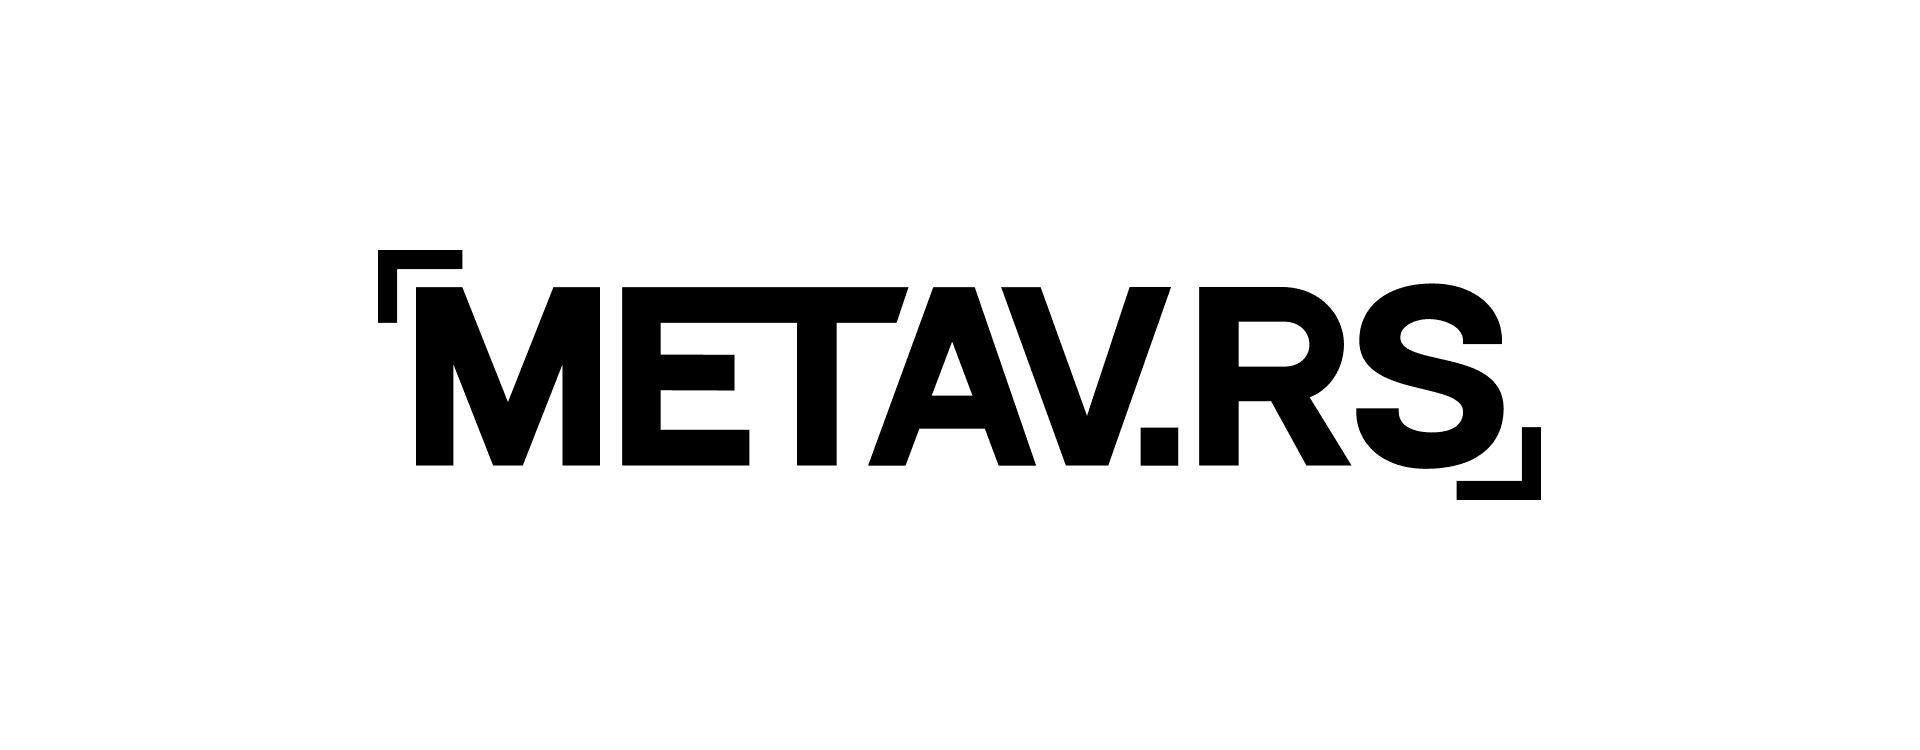 Metav_rs banner